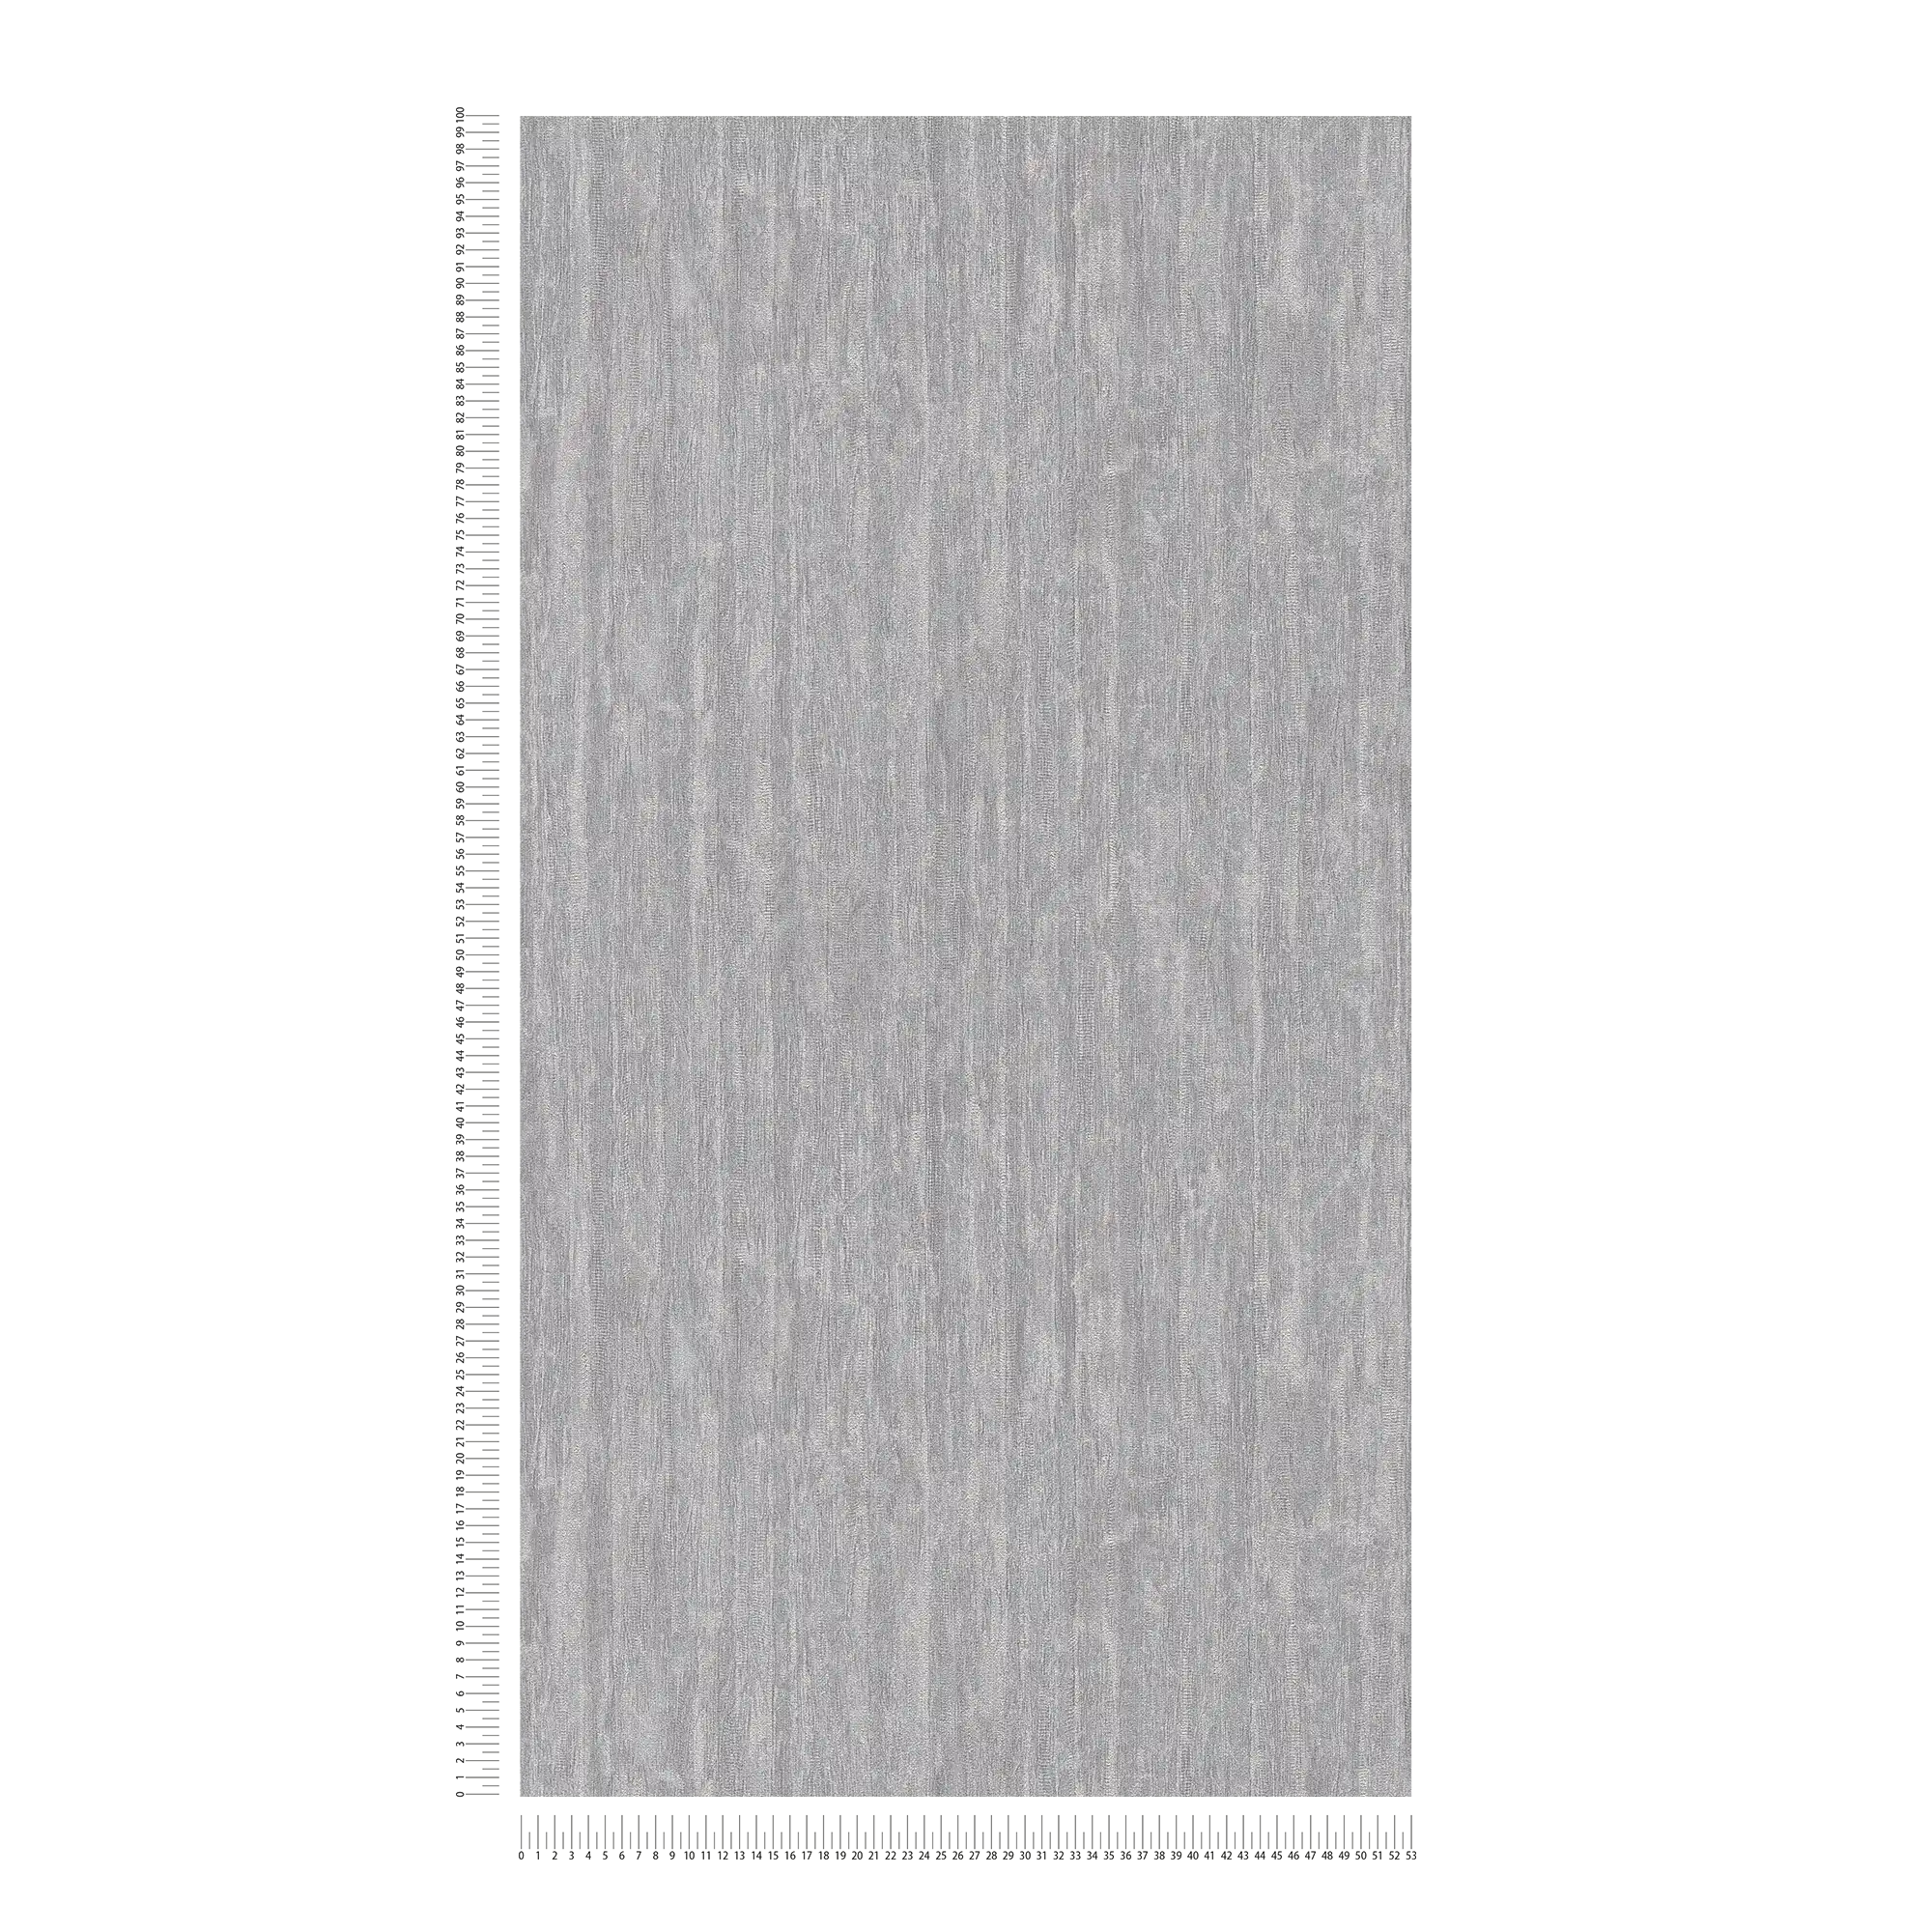             Carta da parati leggermente lucida con motivo a linee - grigio, argento, metallizzato
        